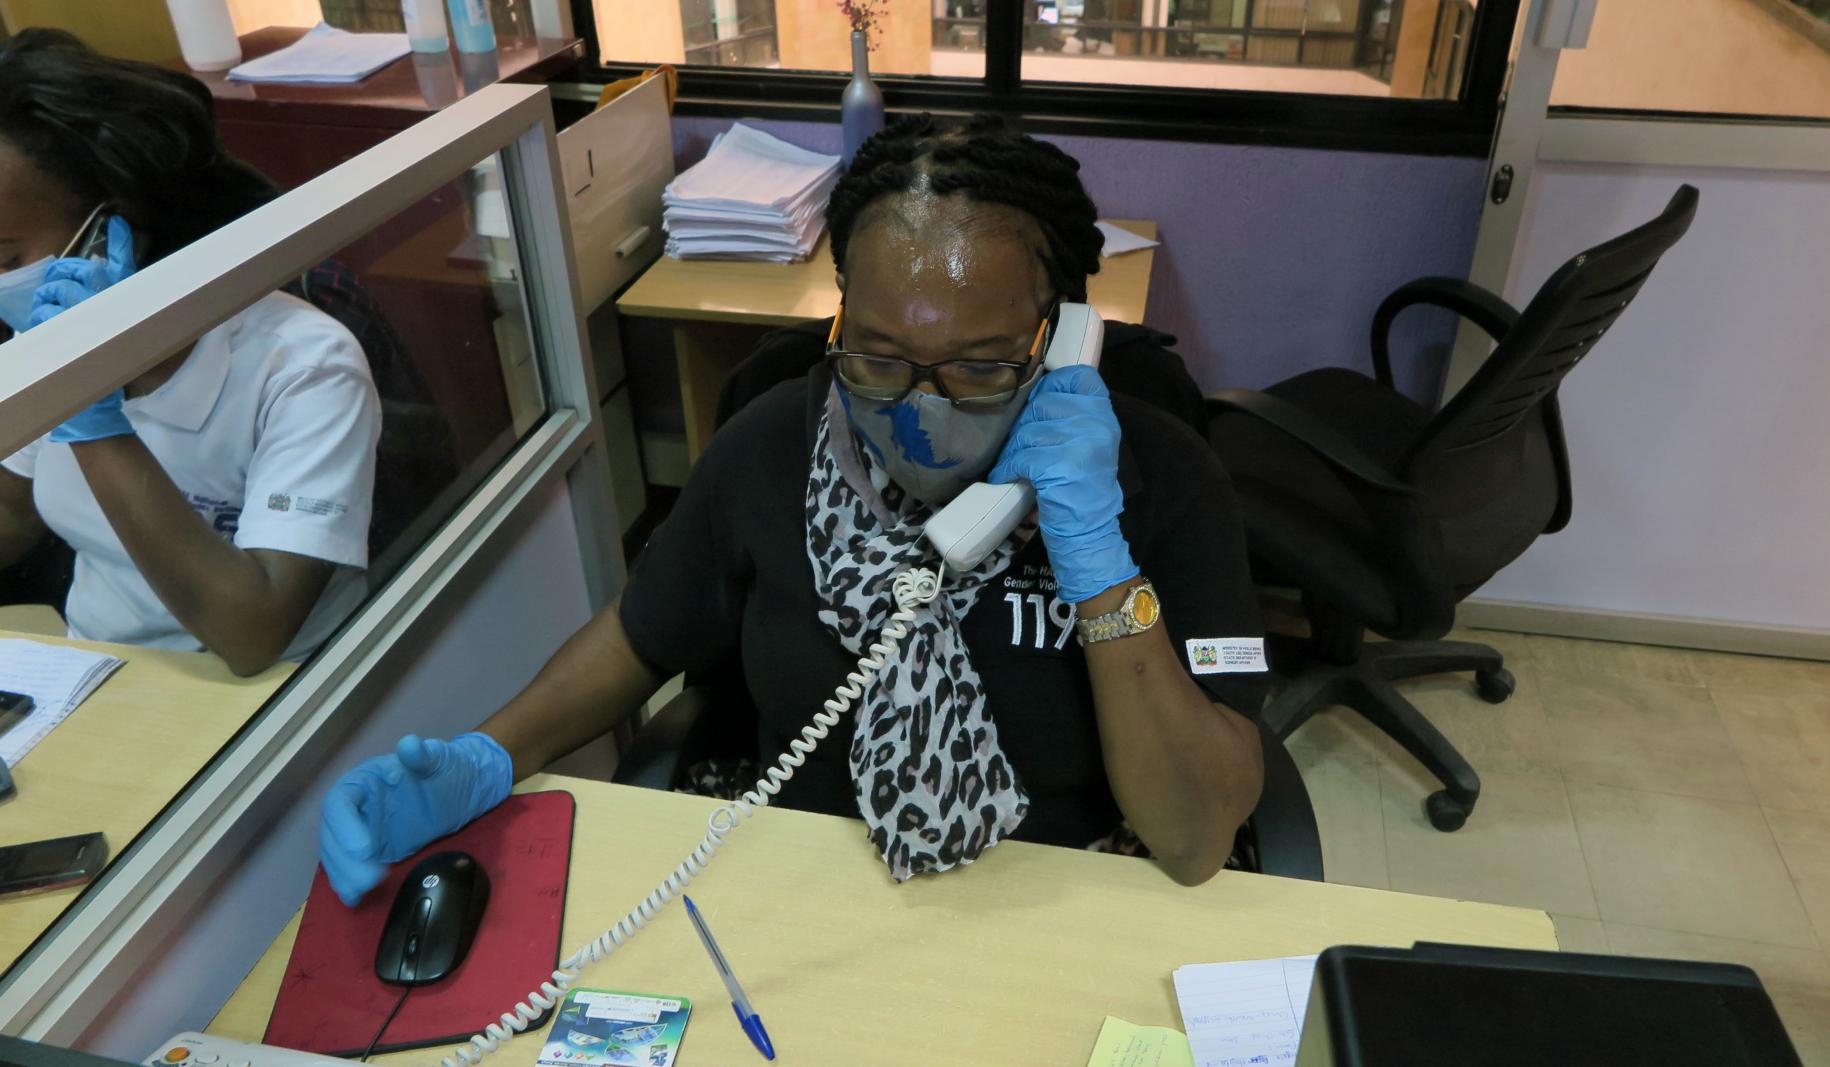 Une téléconseillère répond à un appel passé à la plateforme téléphonique du service d’aide aux victimes. Elle est assise à un bureau et porte un masque et des gants de protection.